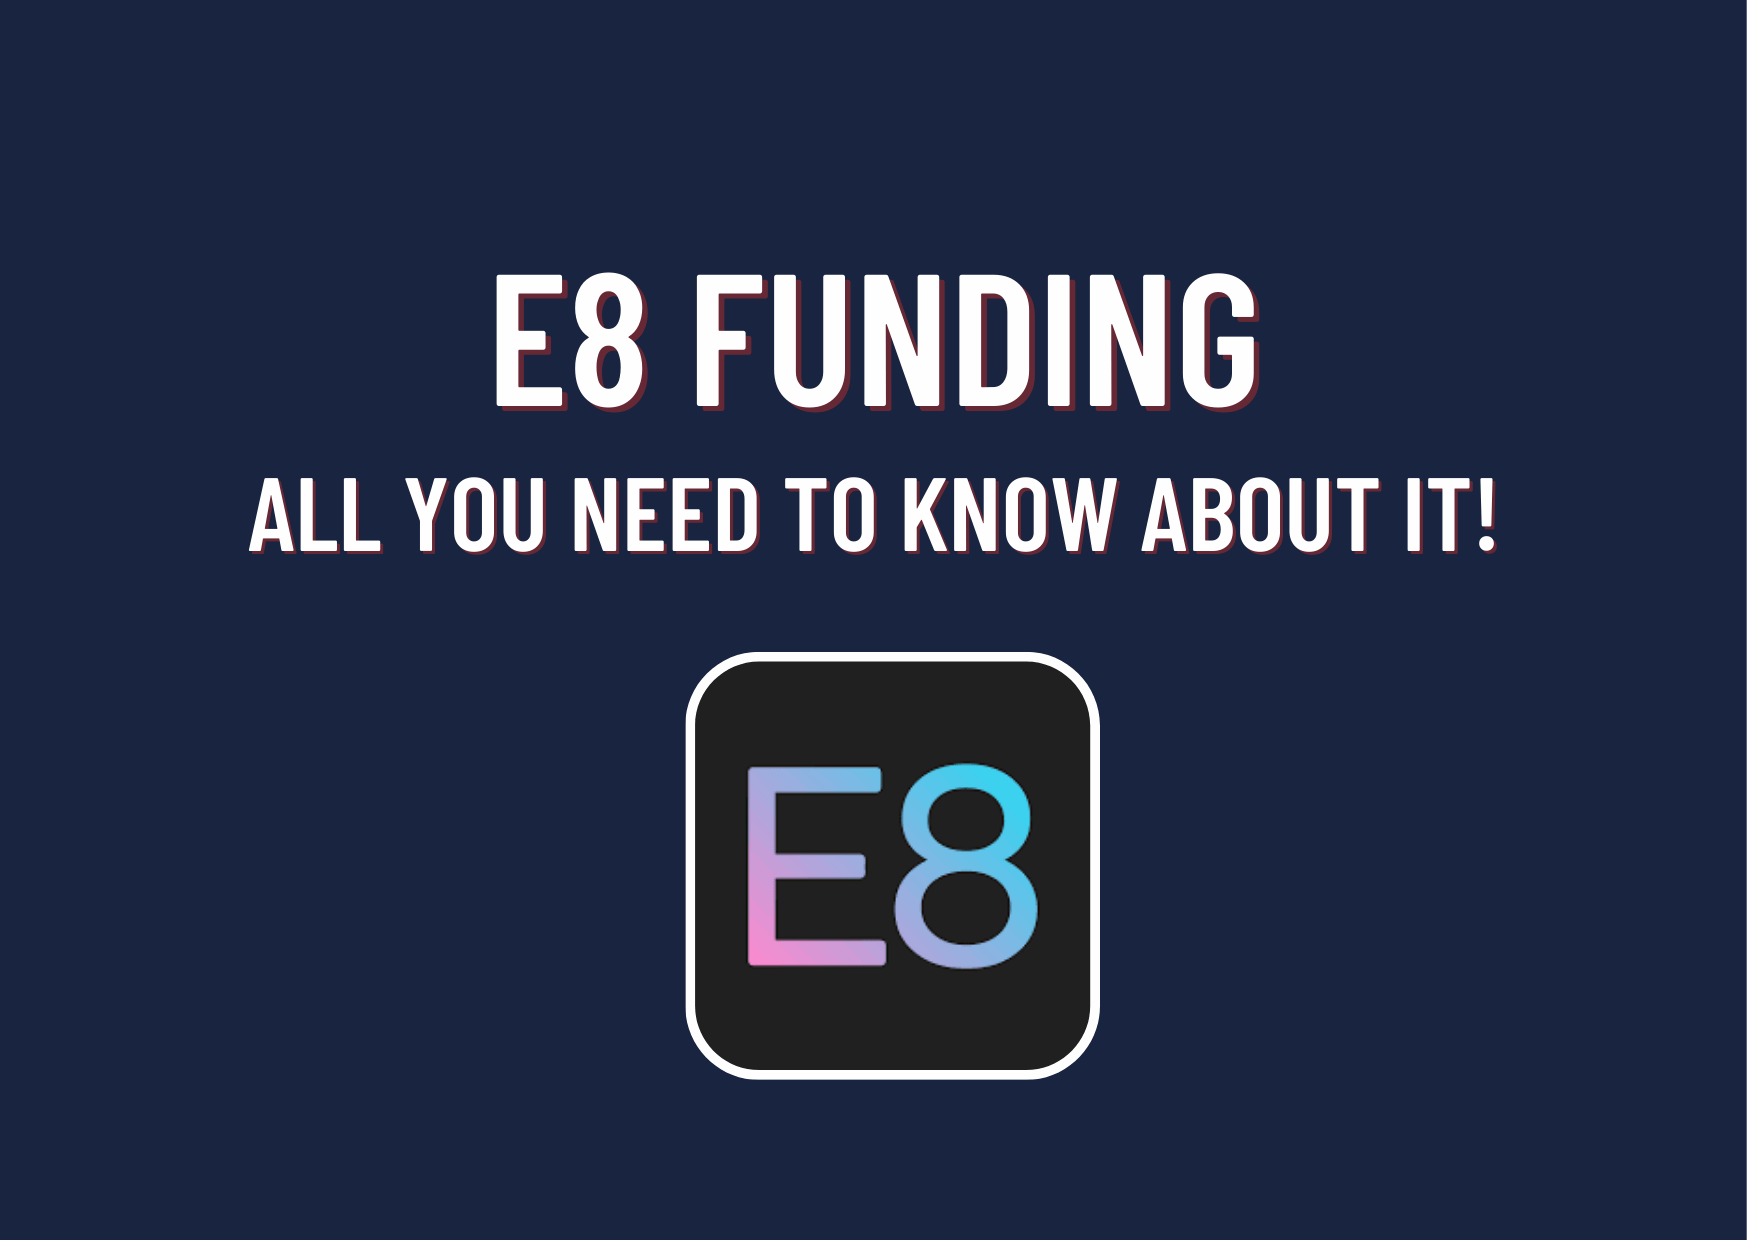 Image: E8 Funding